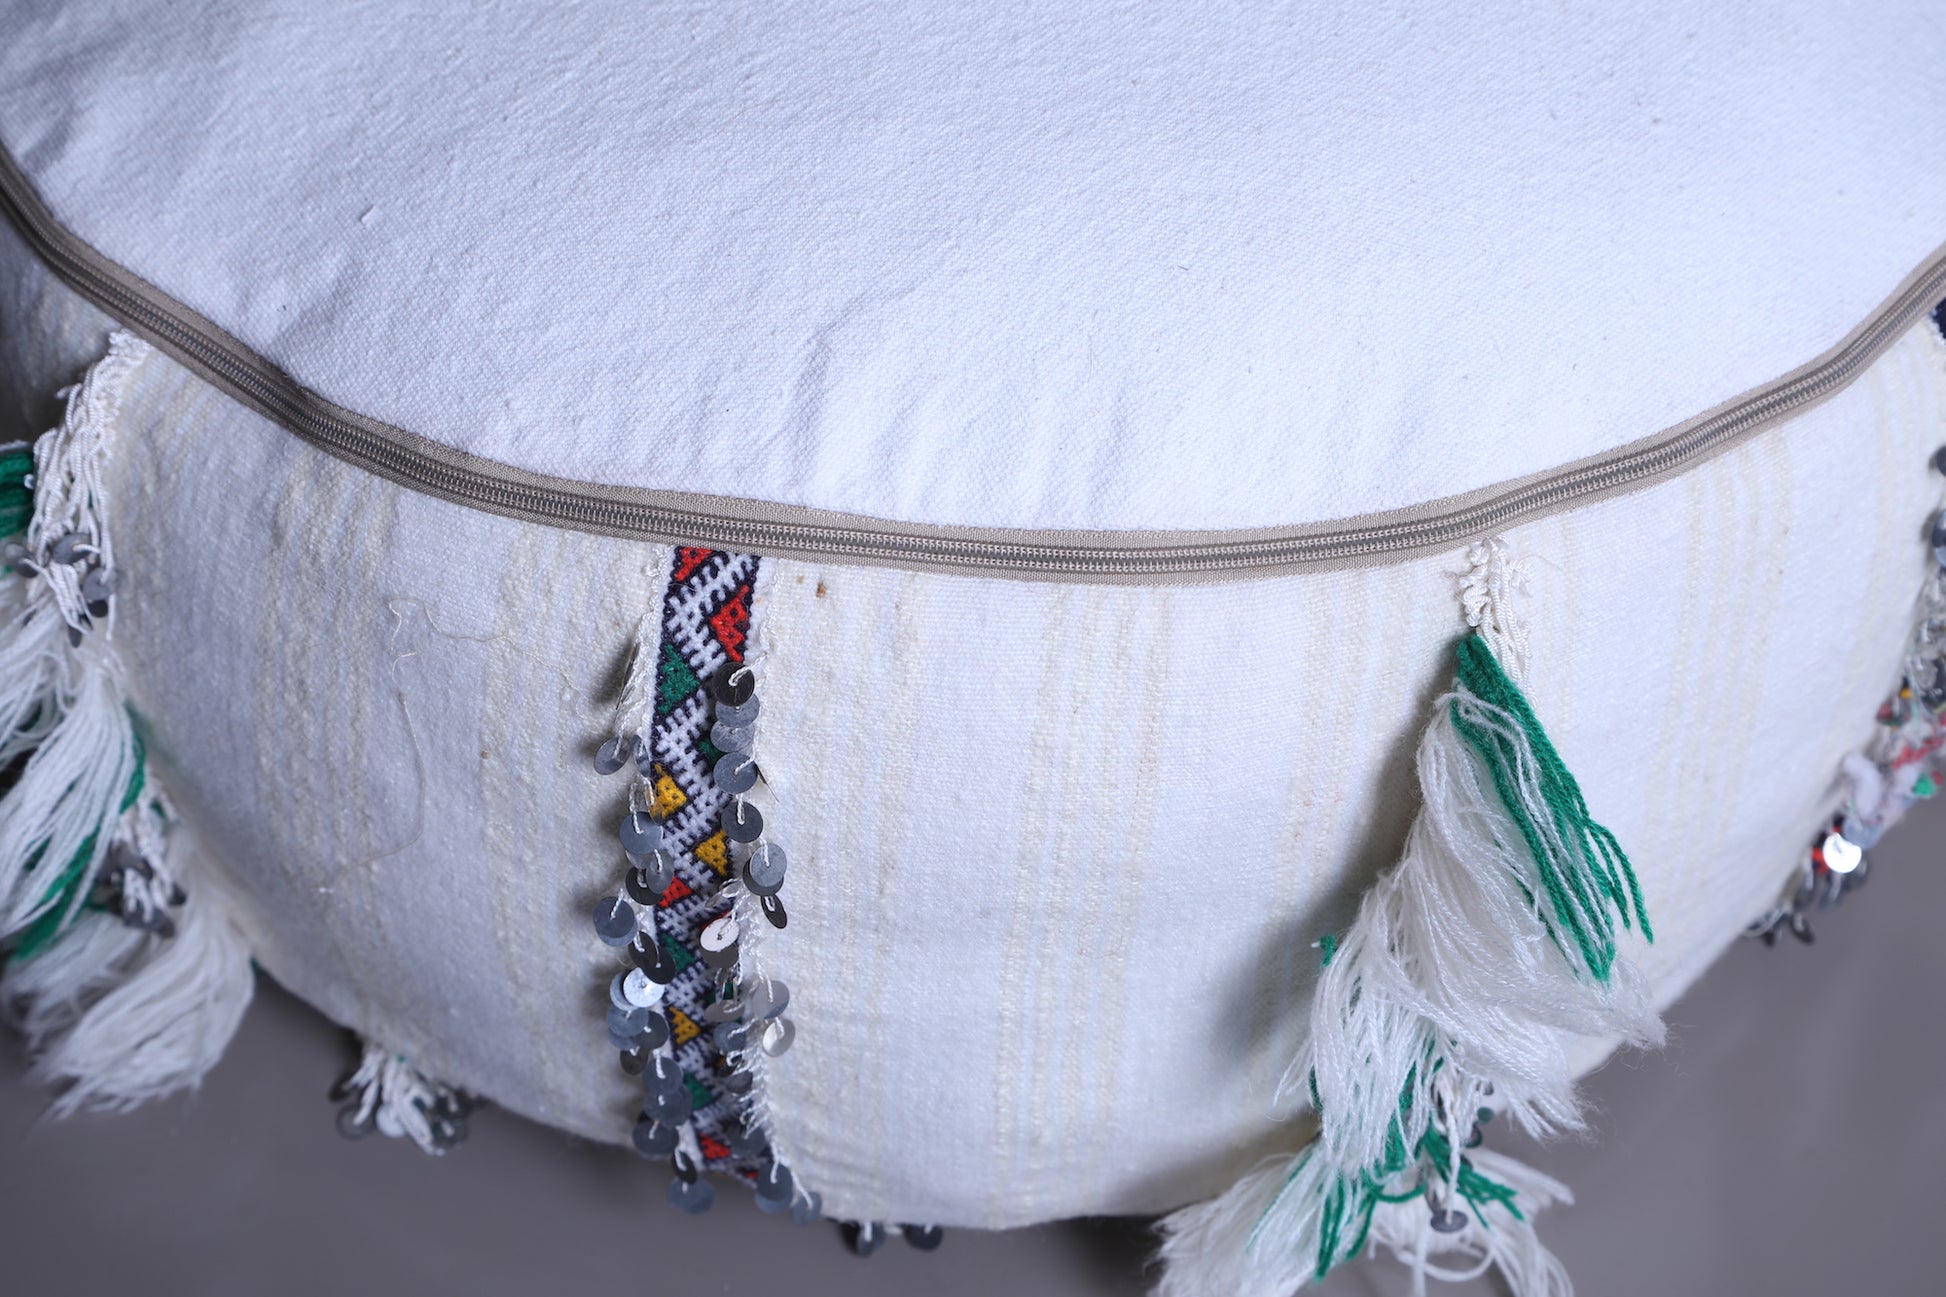 Moroccan round berber handwoven kilim pouf